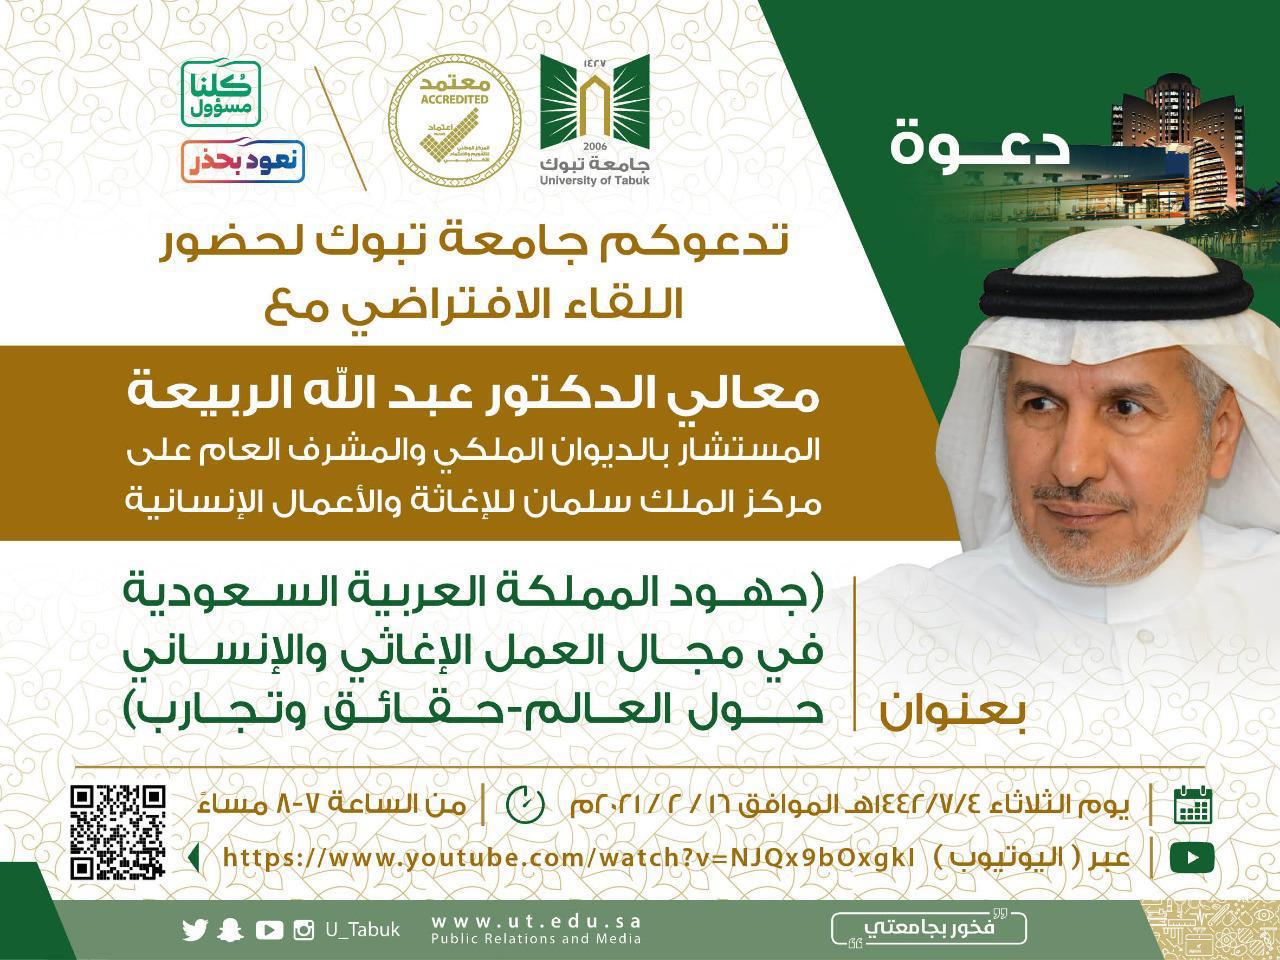 لقاء افتراضي في جامعة تبوك لإبراز جهود السعودية الإغاثية